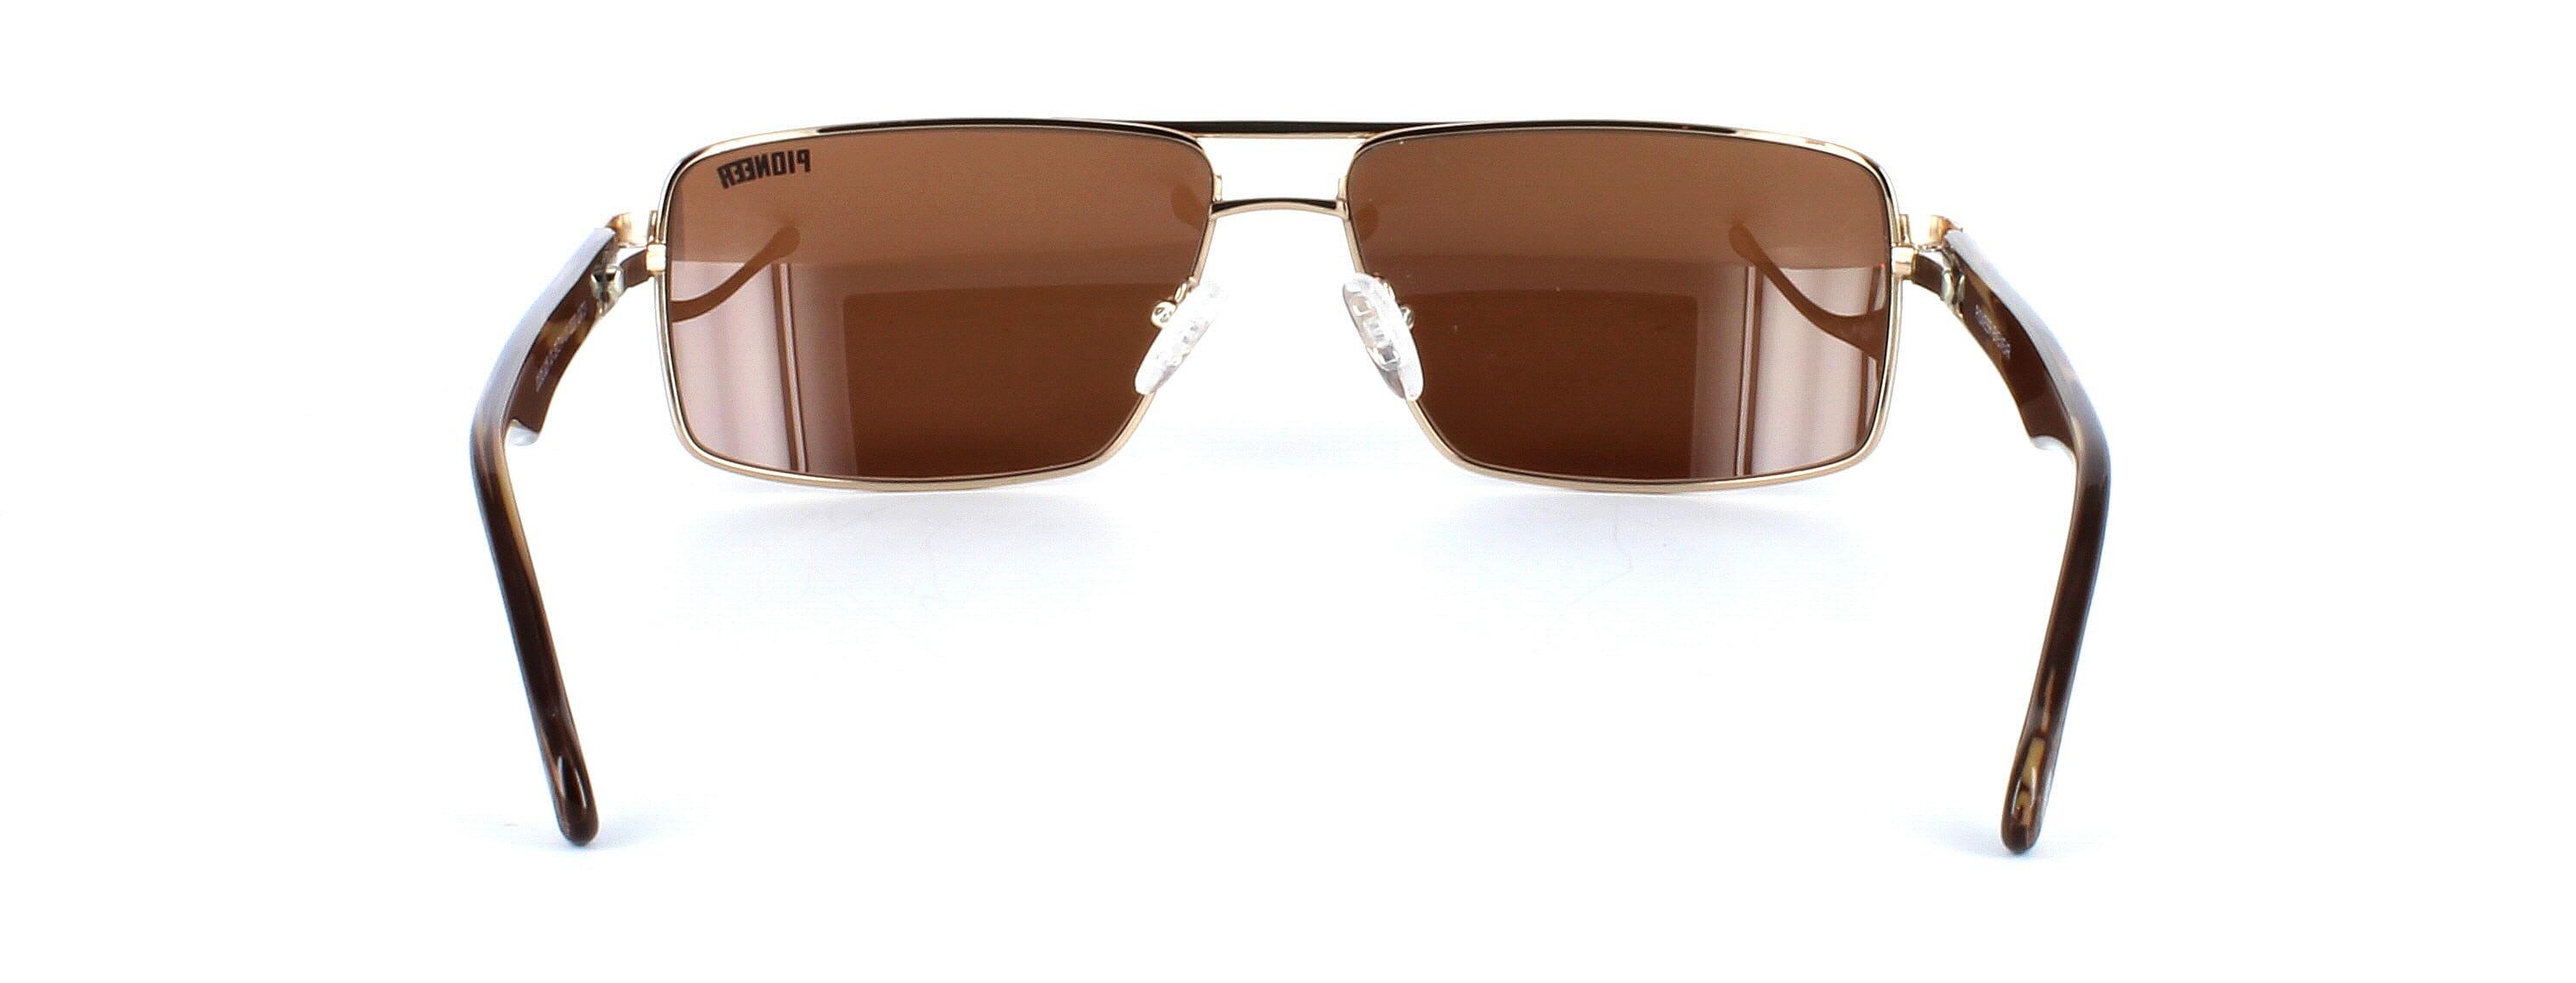 Odonata - Unisex aviator style prescription sunglasses in gold - image view 3